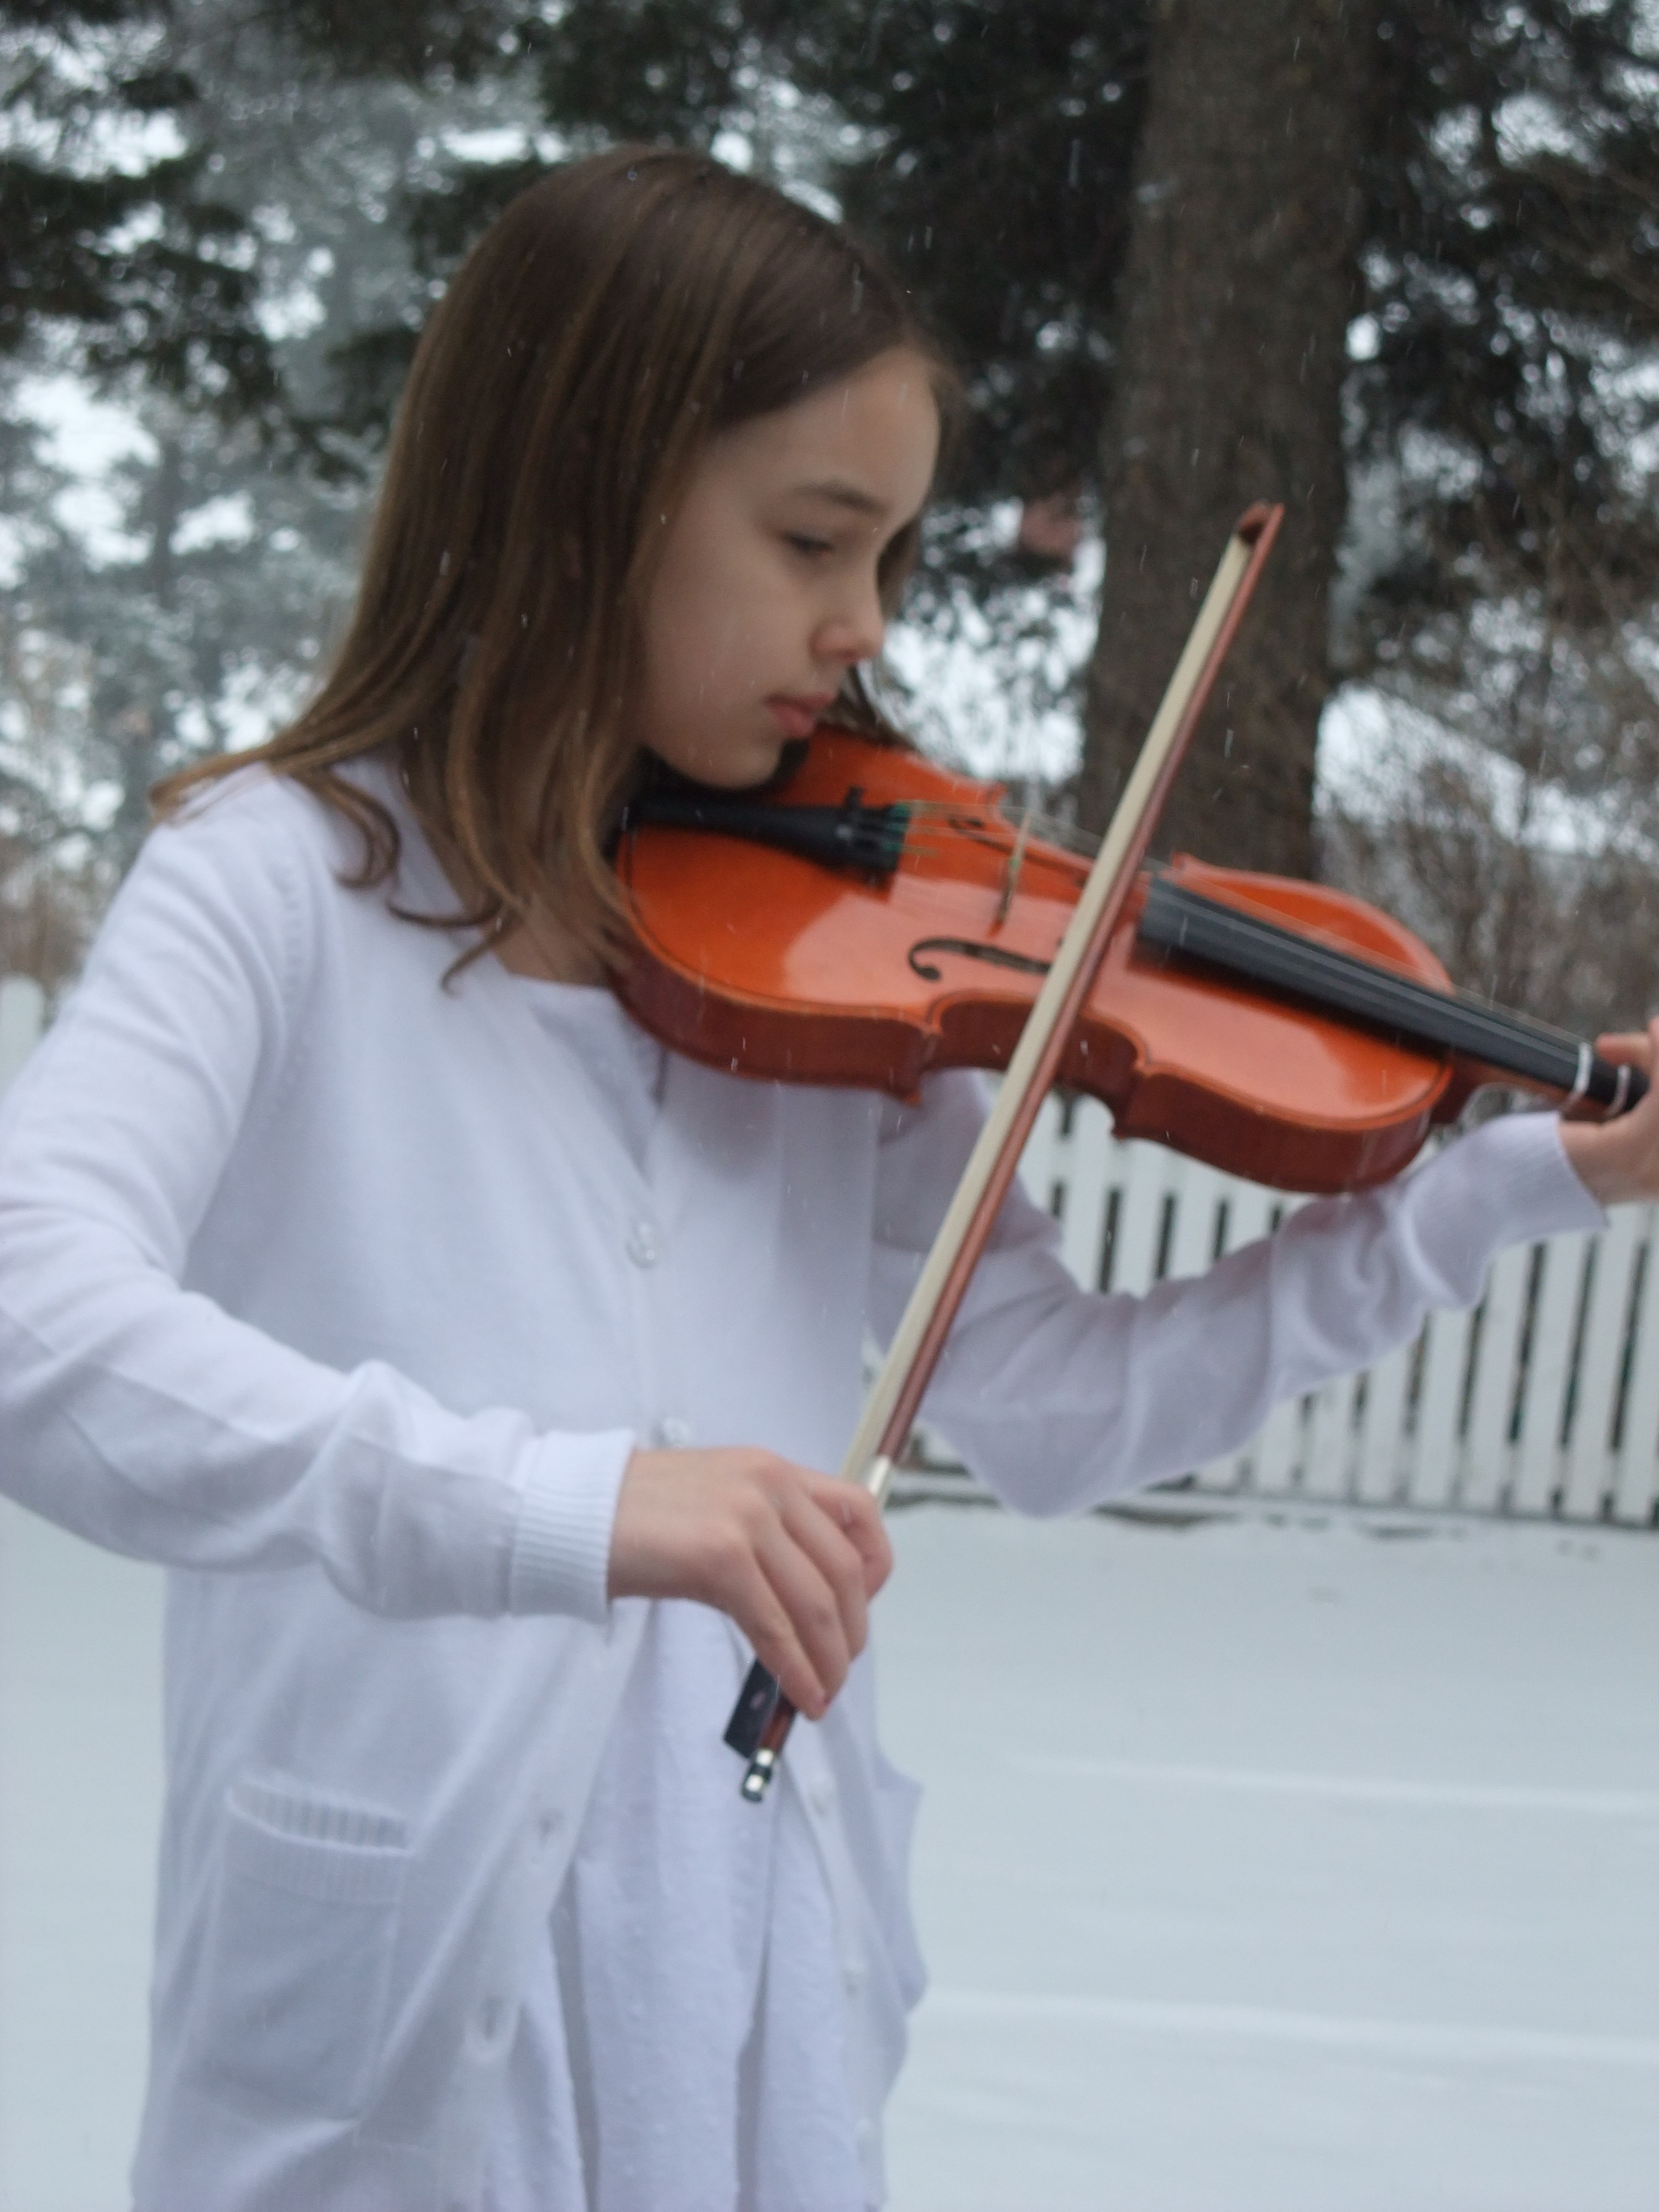 Hannah playing violin outside